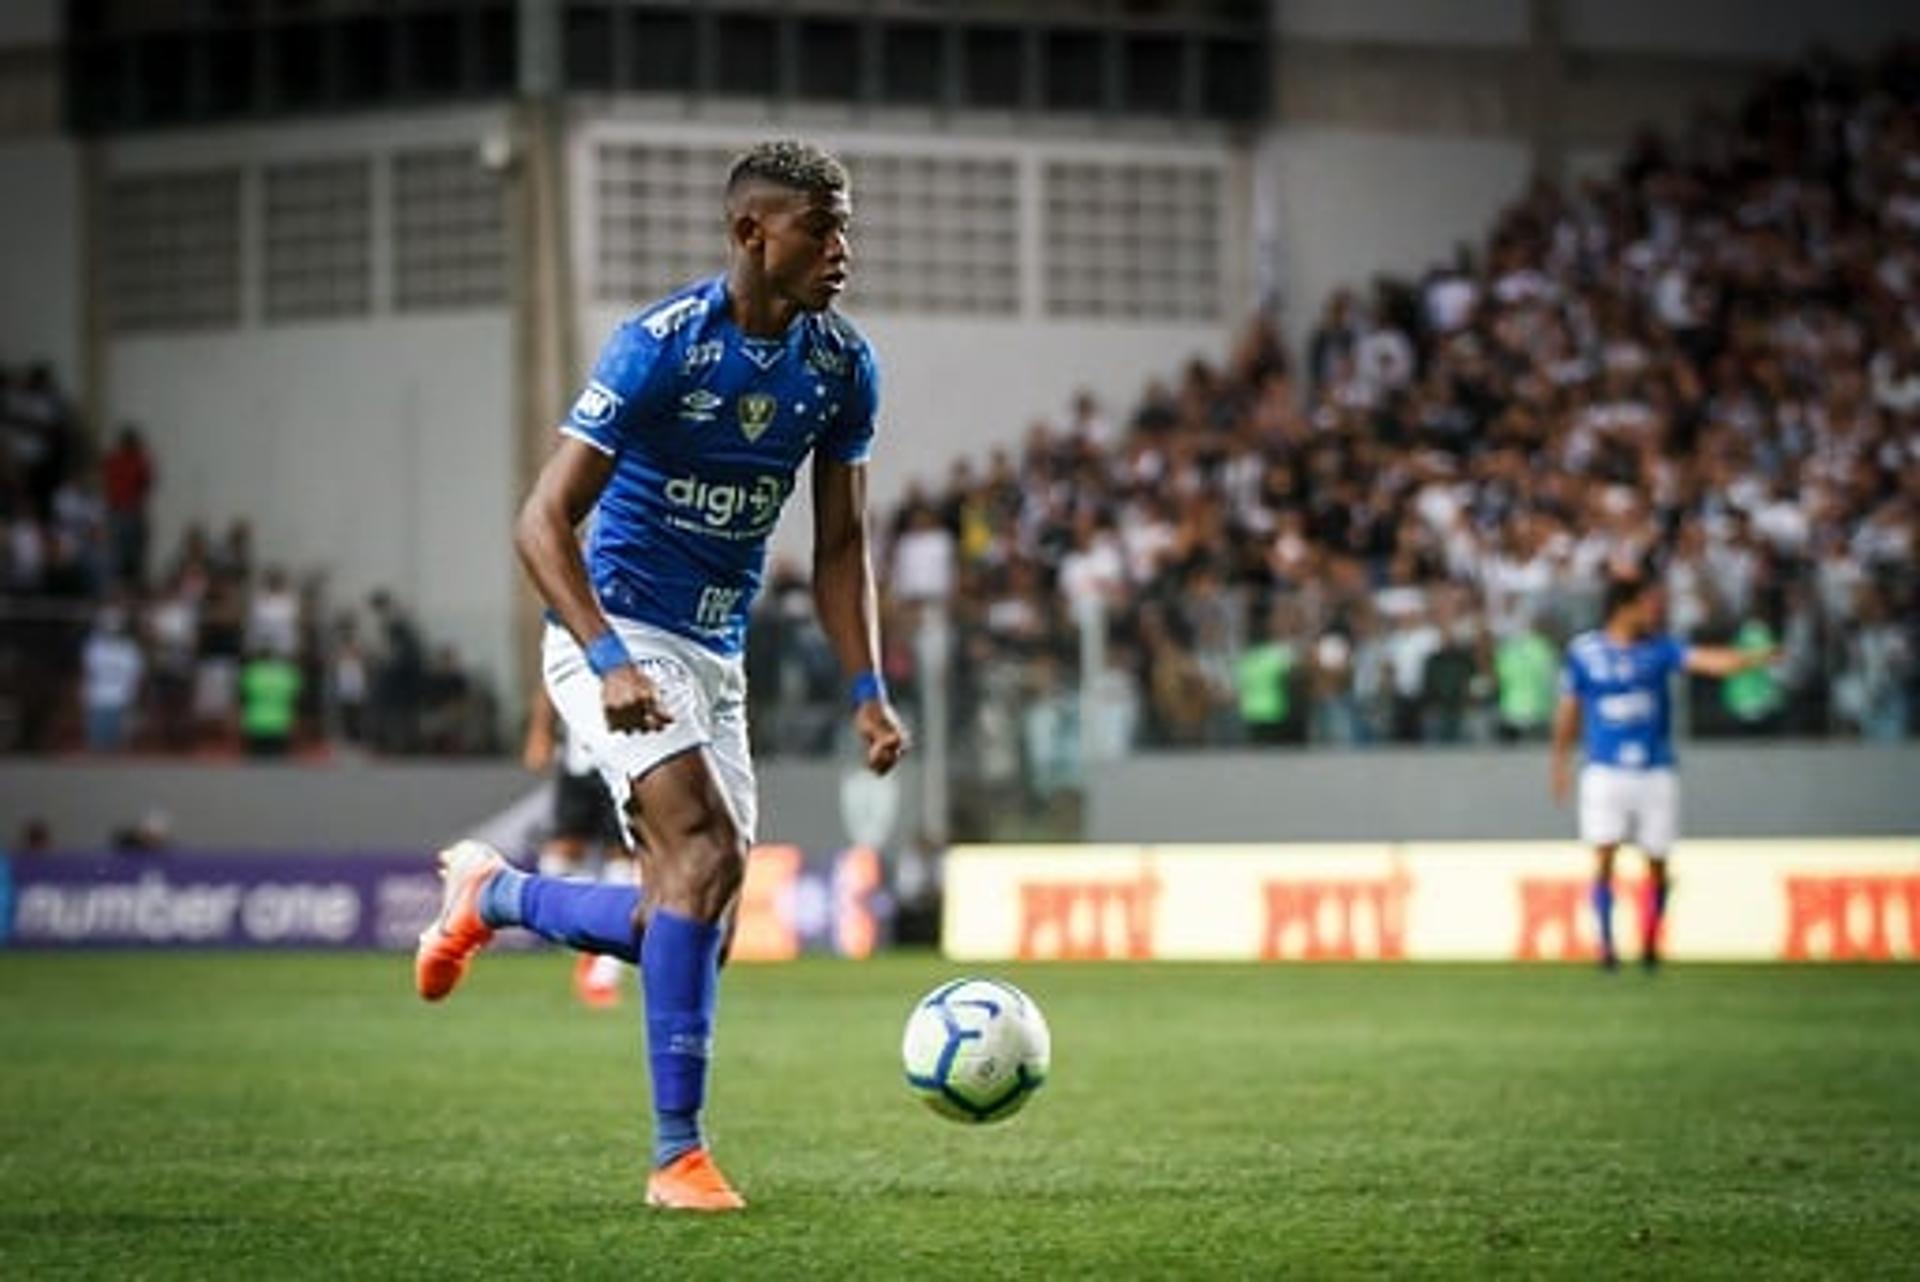 Orejuela surpreendeu a todos no Cruzeiro com sua recuperação antes do prazo estiulado